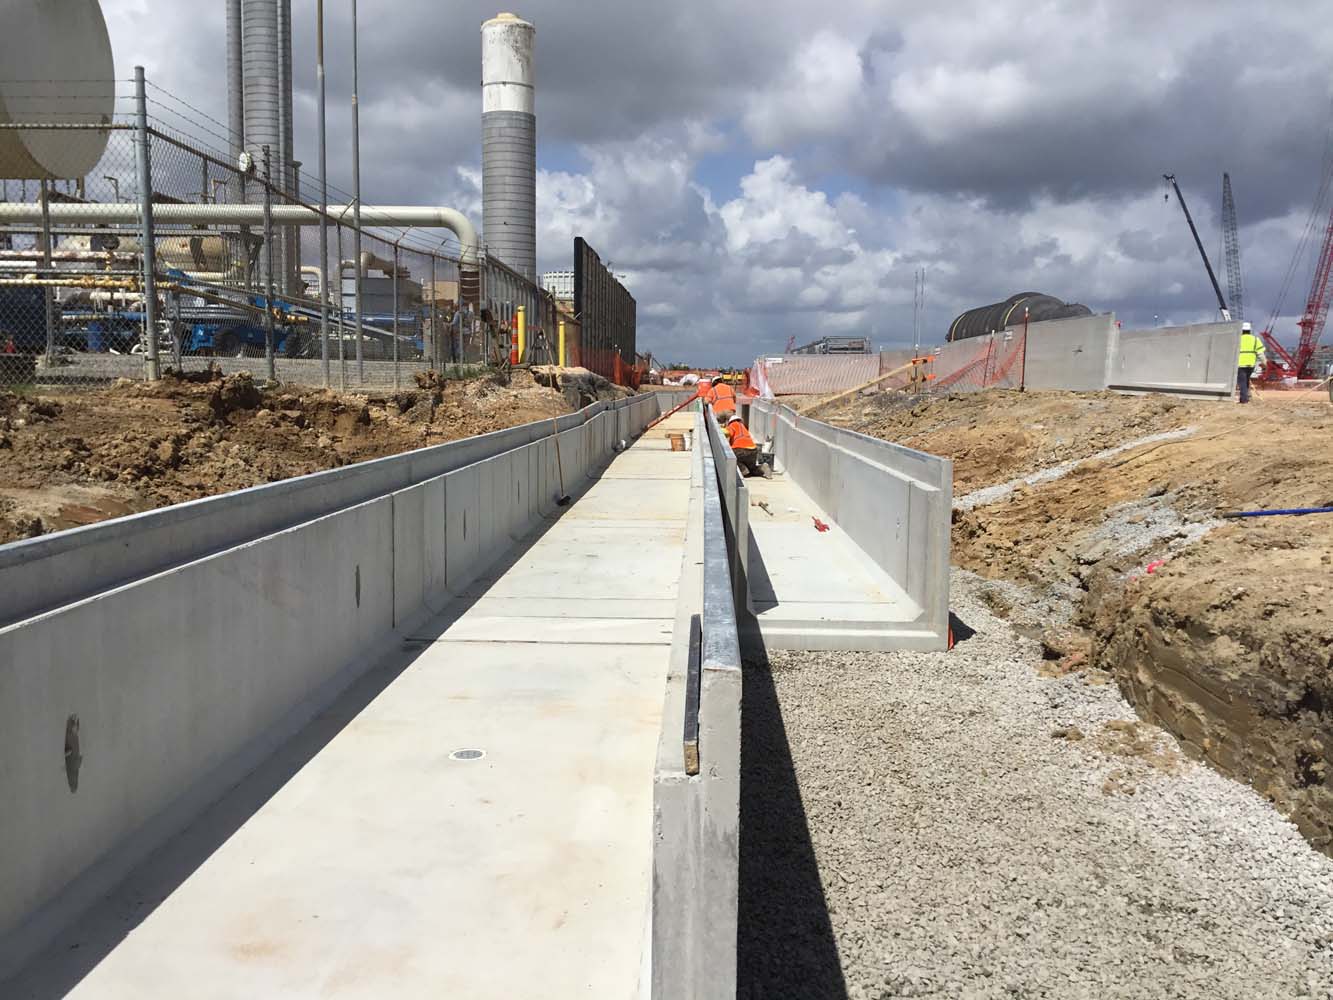 Barriere_Construction_Concrete_Channel